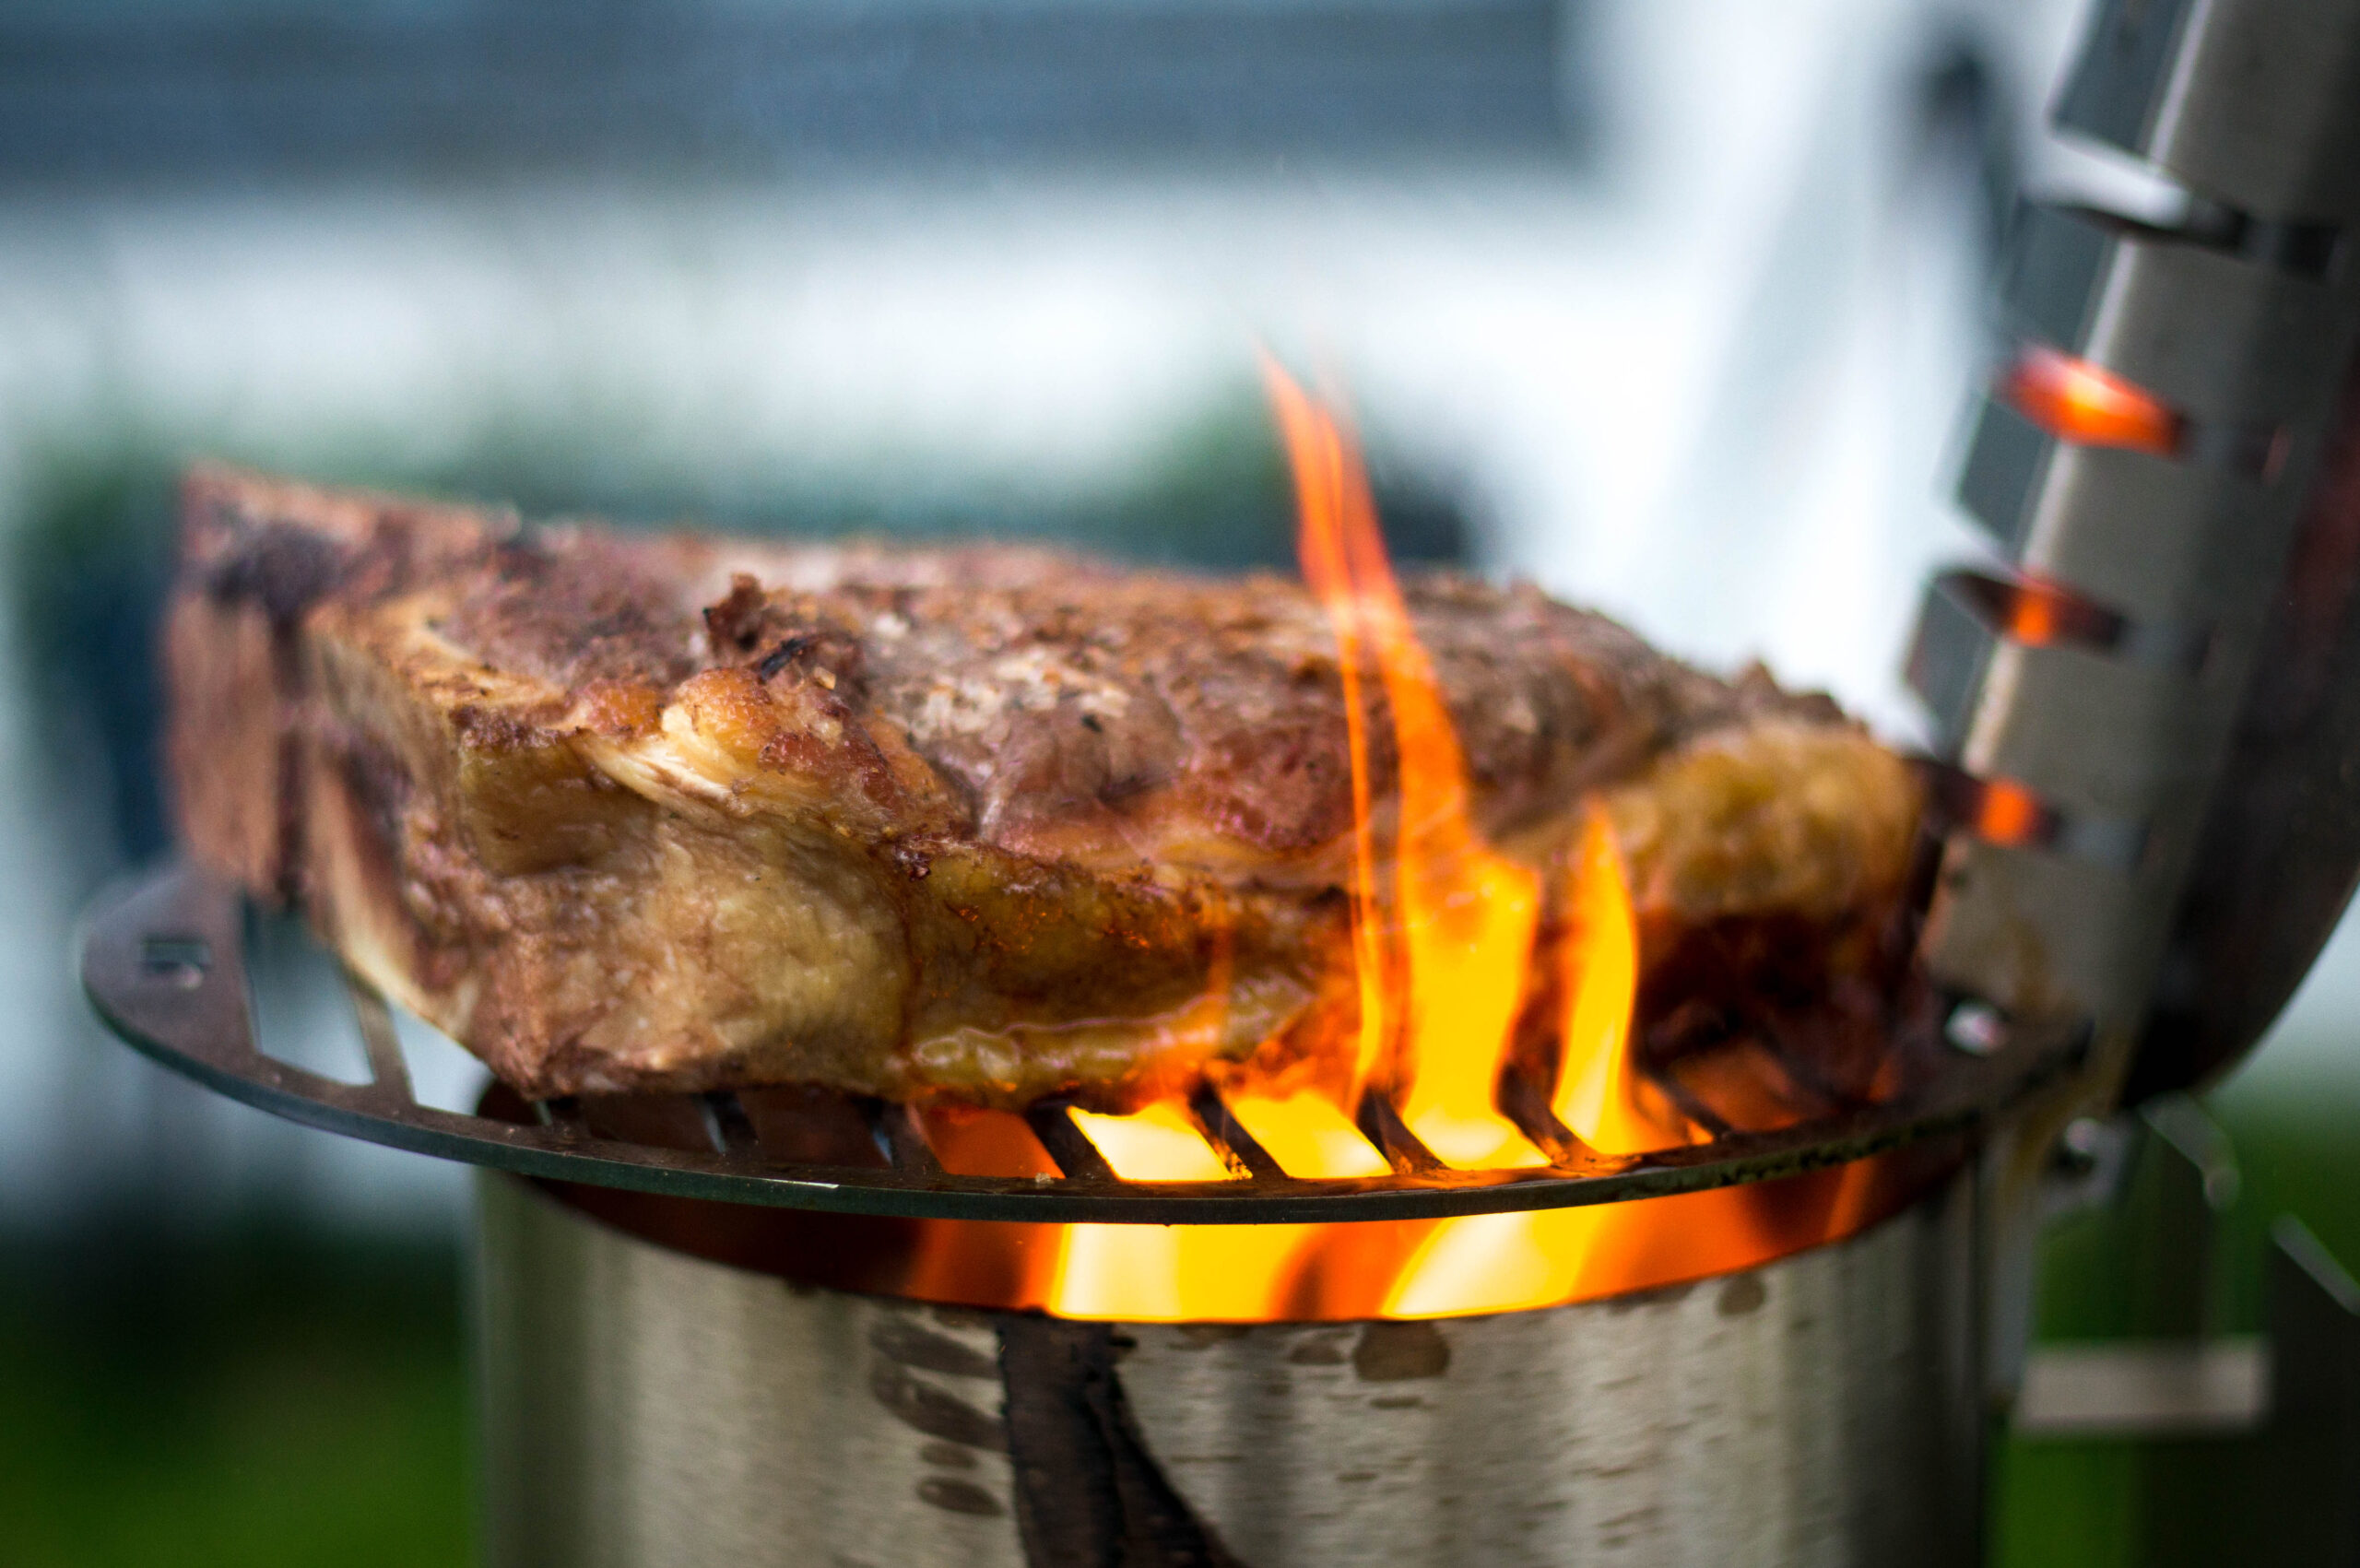 Laseraffe - Steak richtig Sous Vide zubereiten